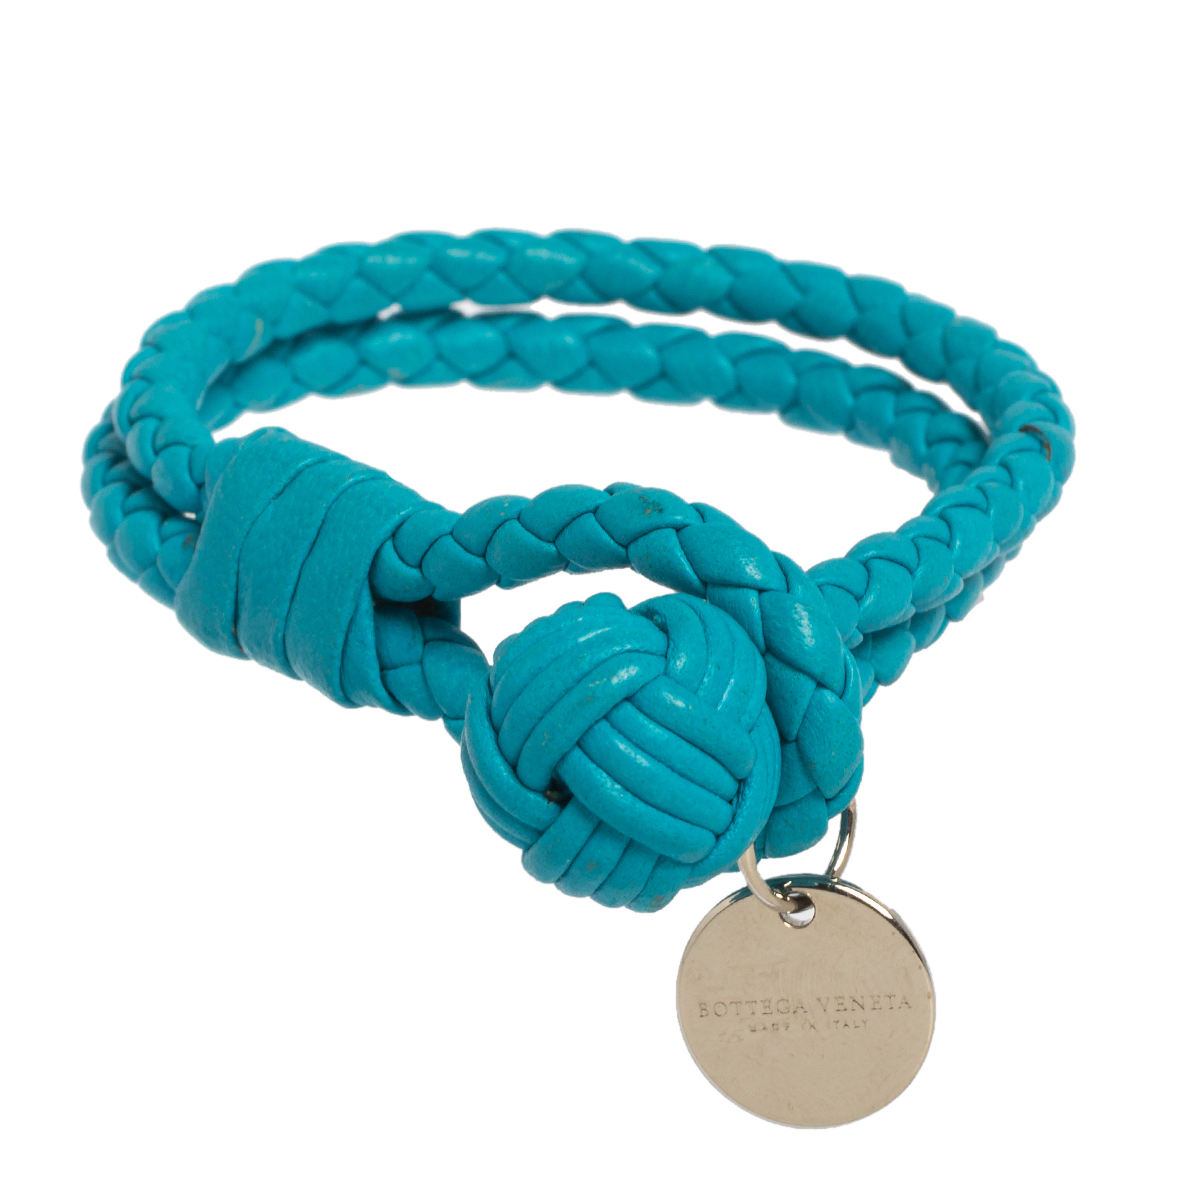 Bottega Veneta Blue Intrecciato Nappa Leather Knot Bracelet S